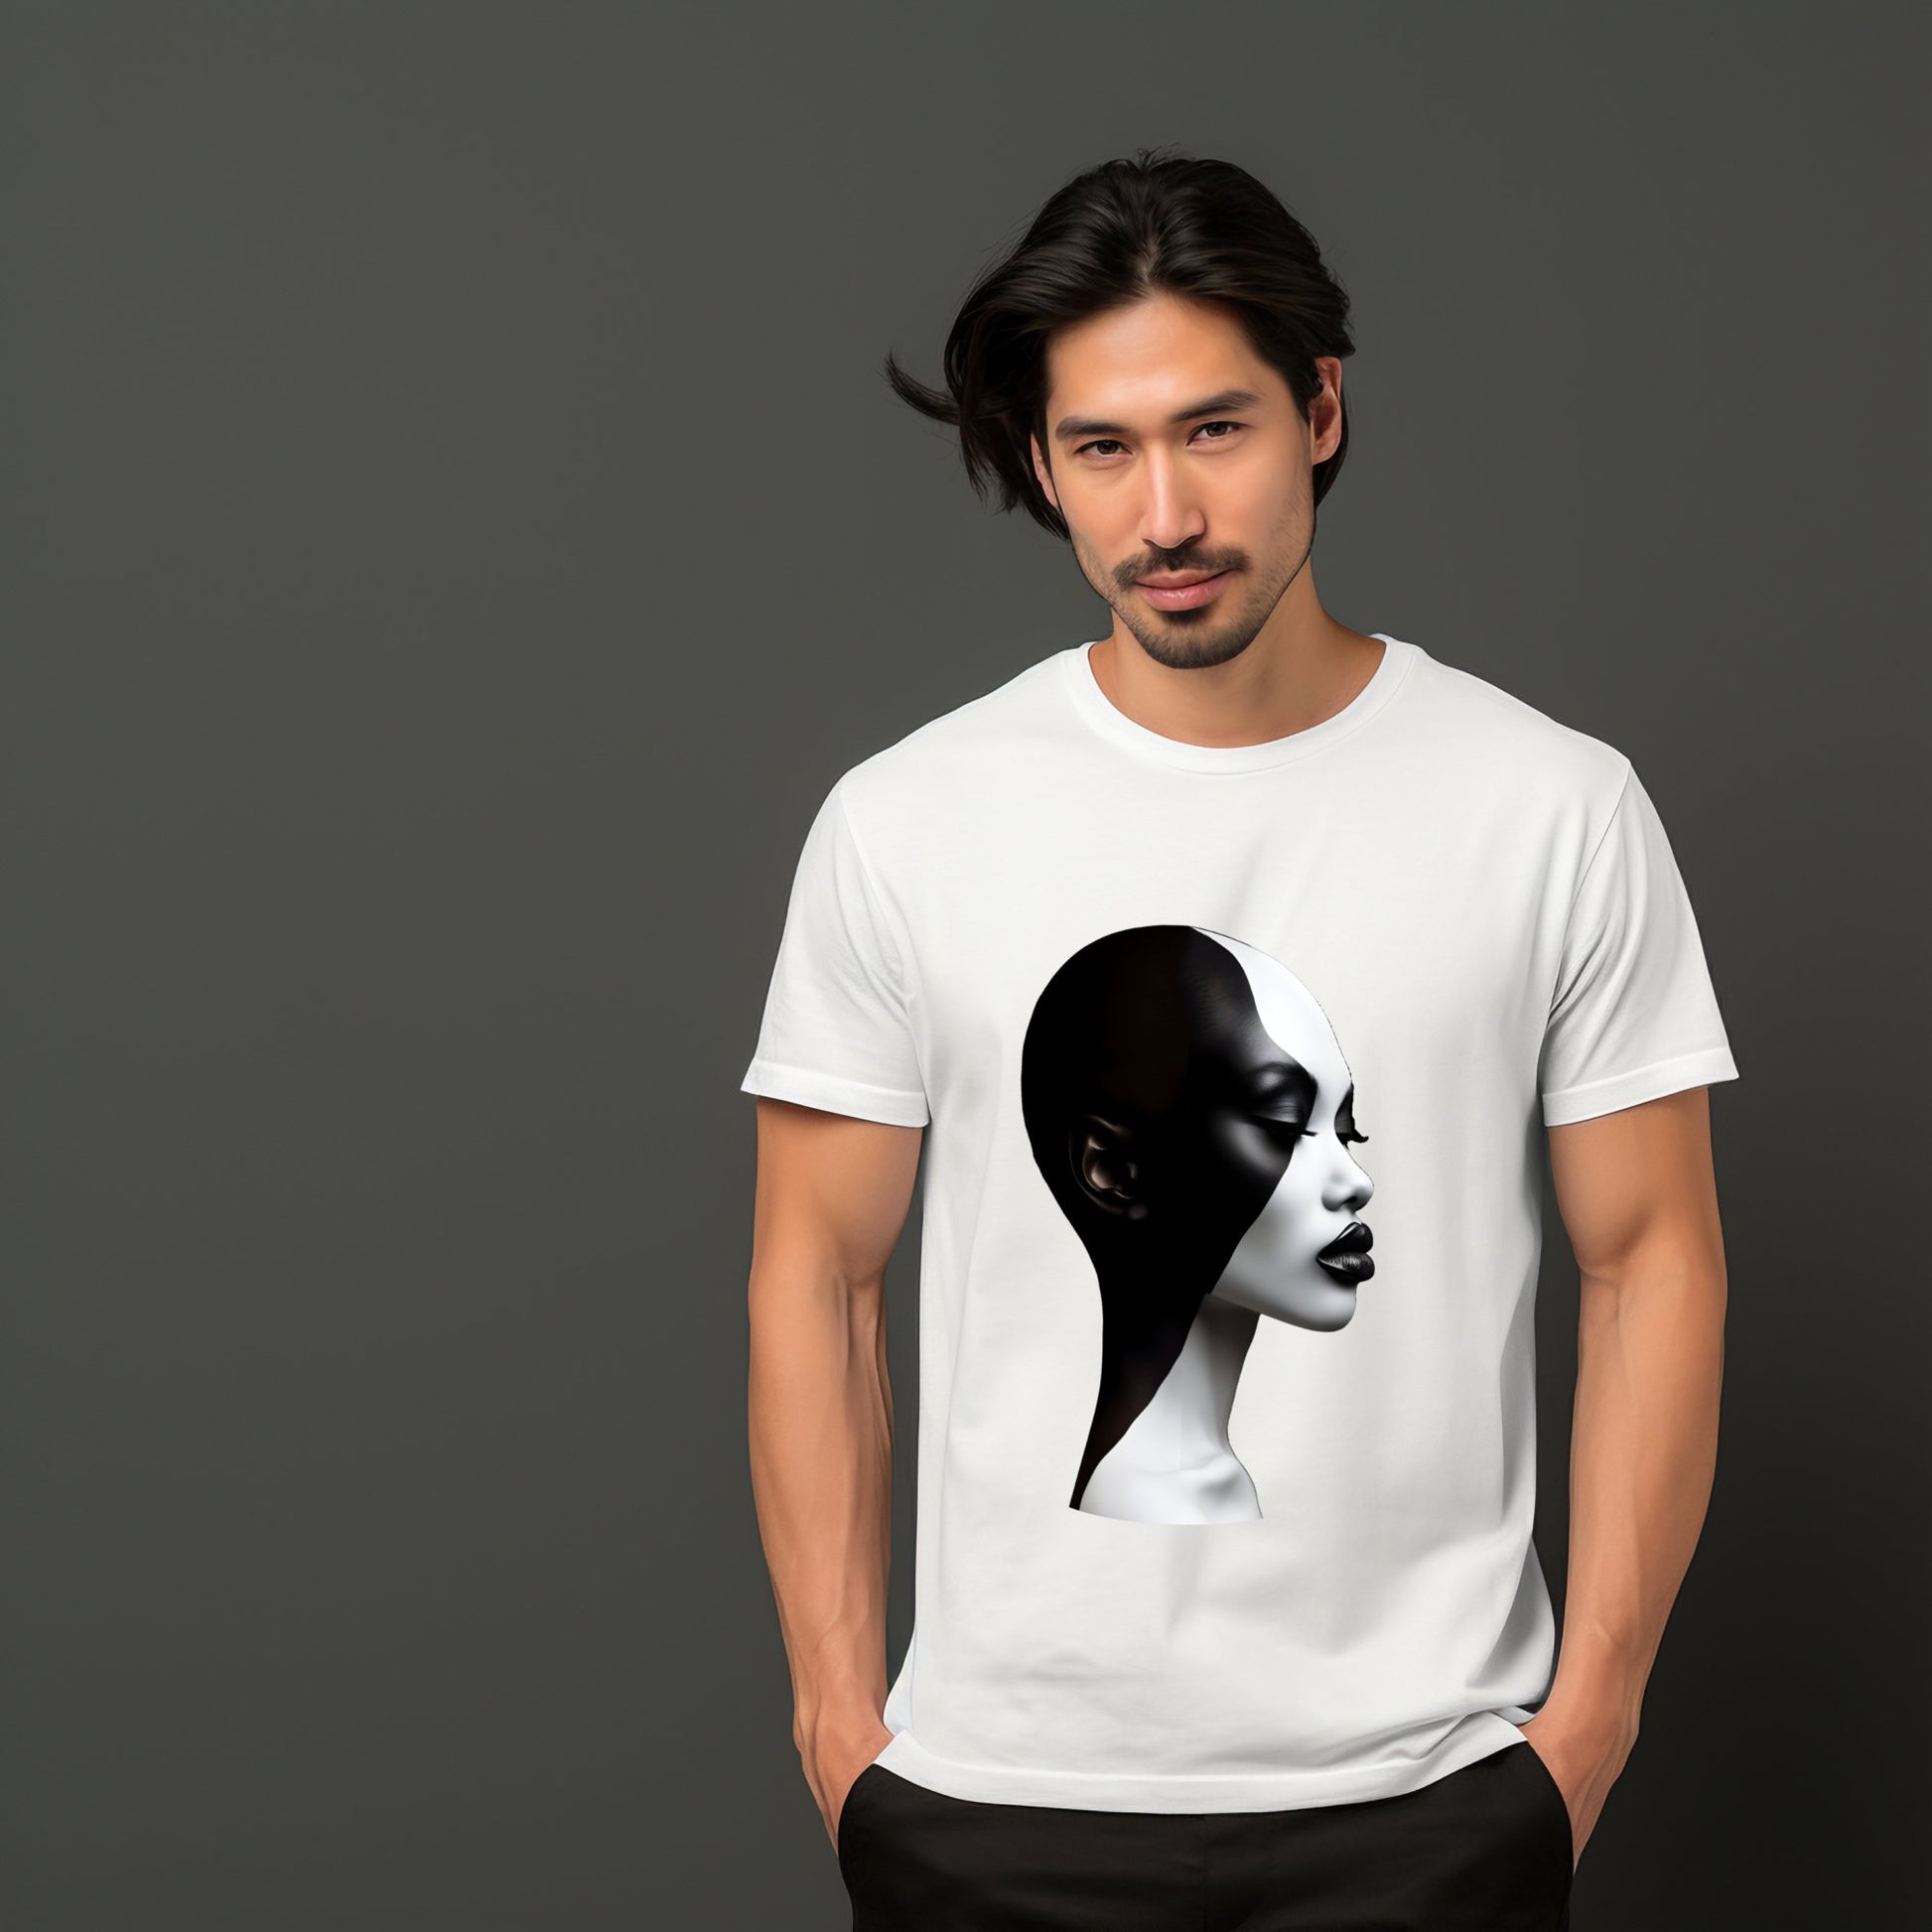 Vyras vilkintis baltus "Black & White" marškinėlius su meniniu veido spaudu, Designedbyme.lt, designedbyme, Designed By Me, marskineliai, Marškinėliai, vyriskos maikes, Visi produktai